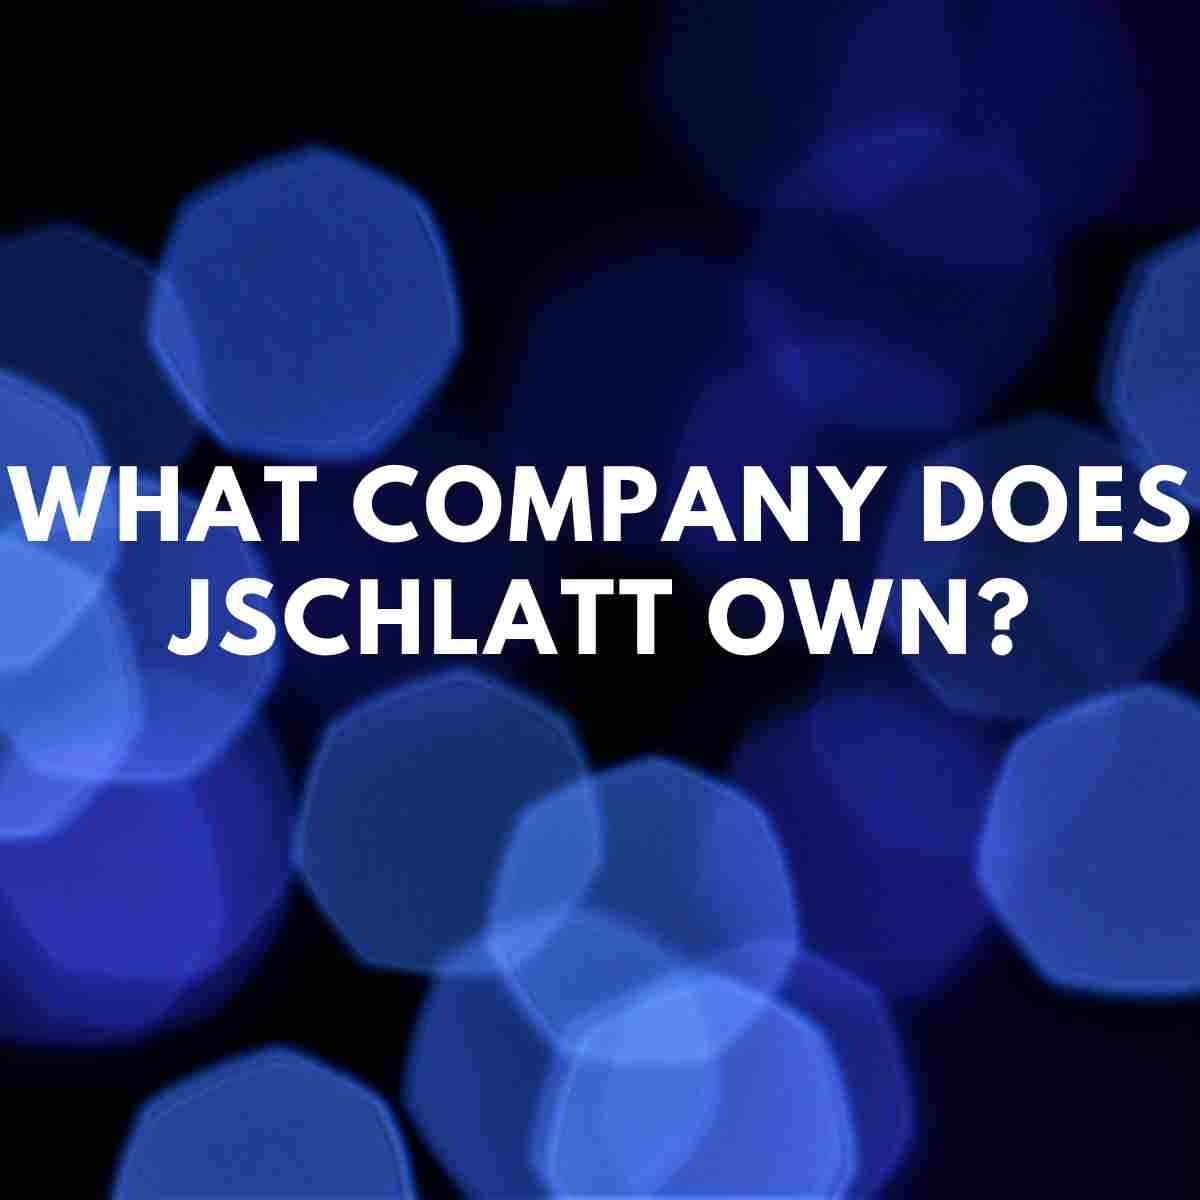 What company does Jschlatt own